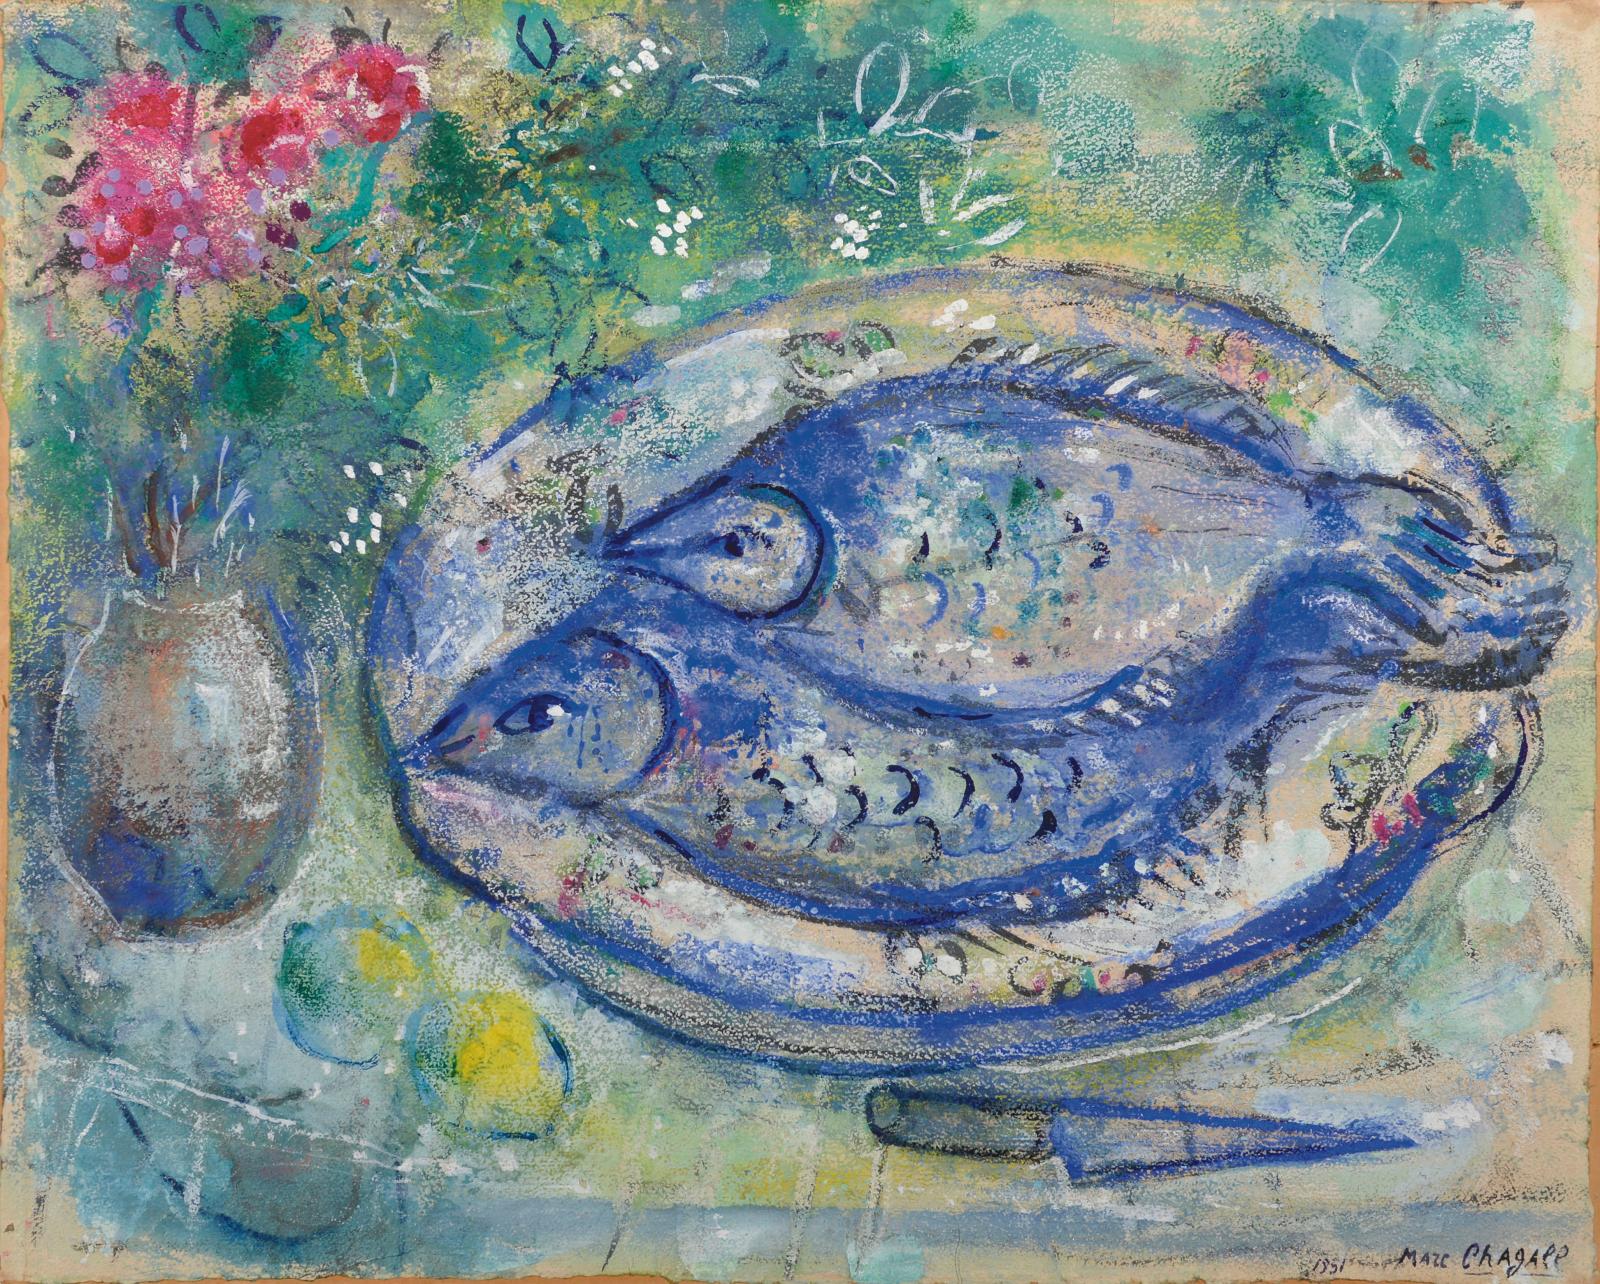 Deux limandes bleues façon Marc Chagall